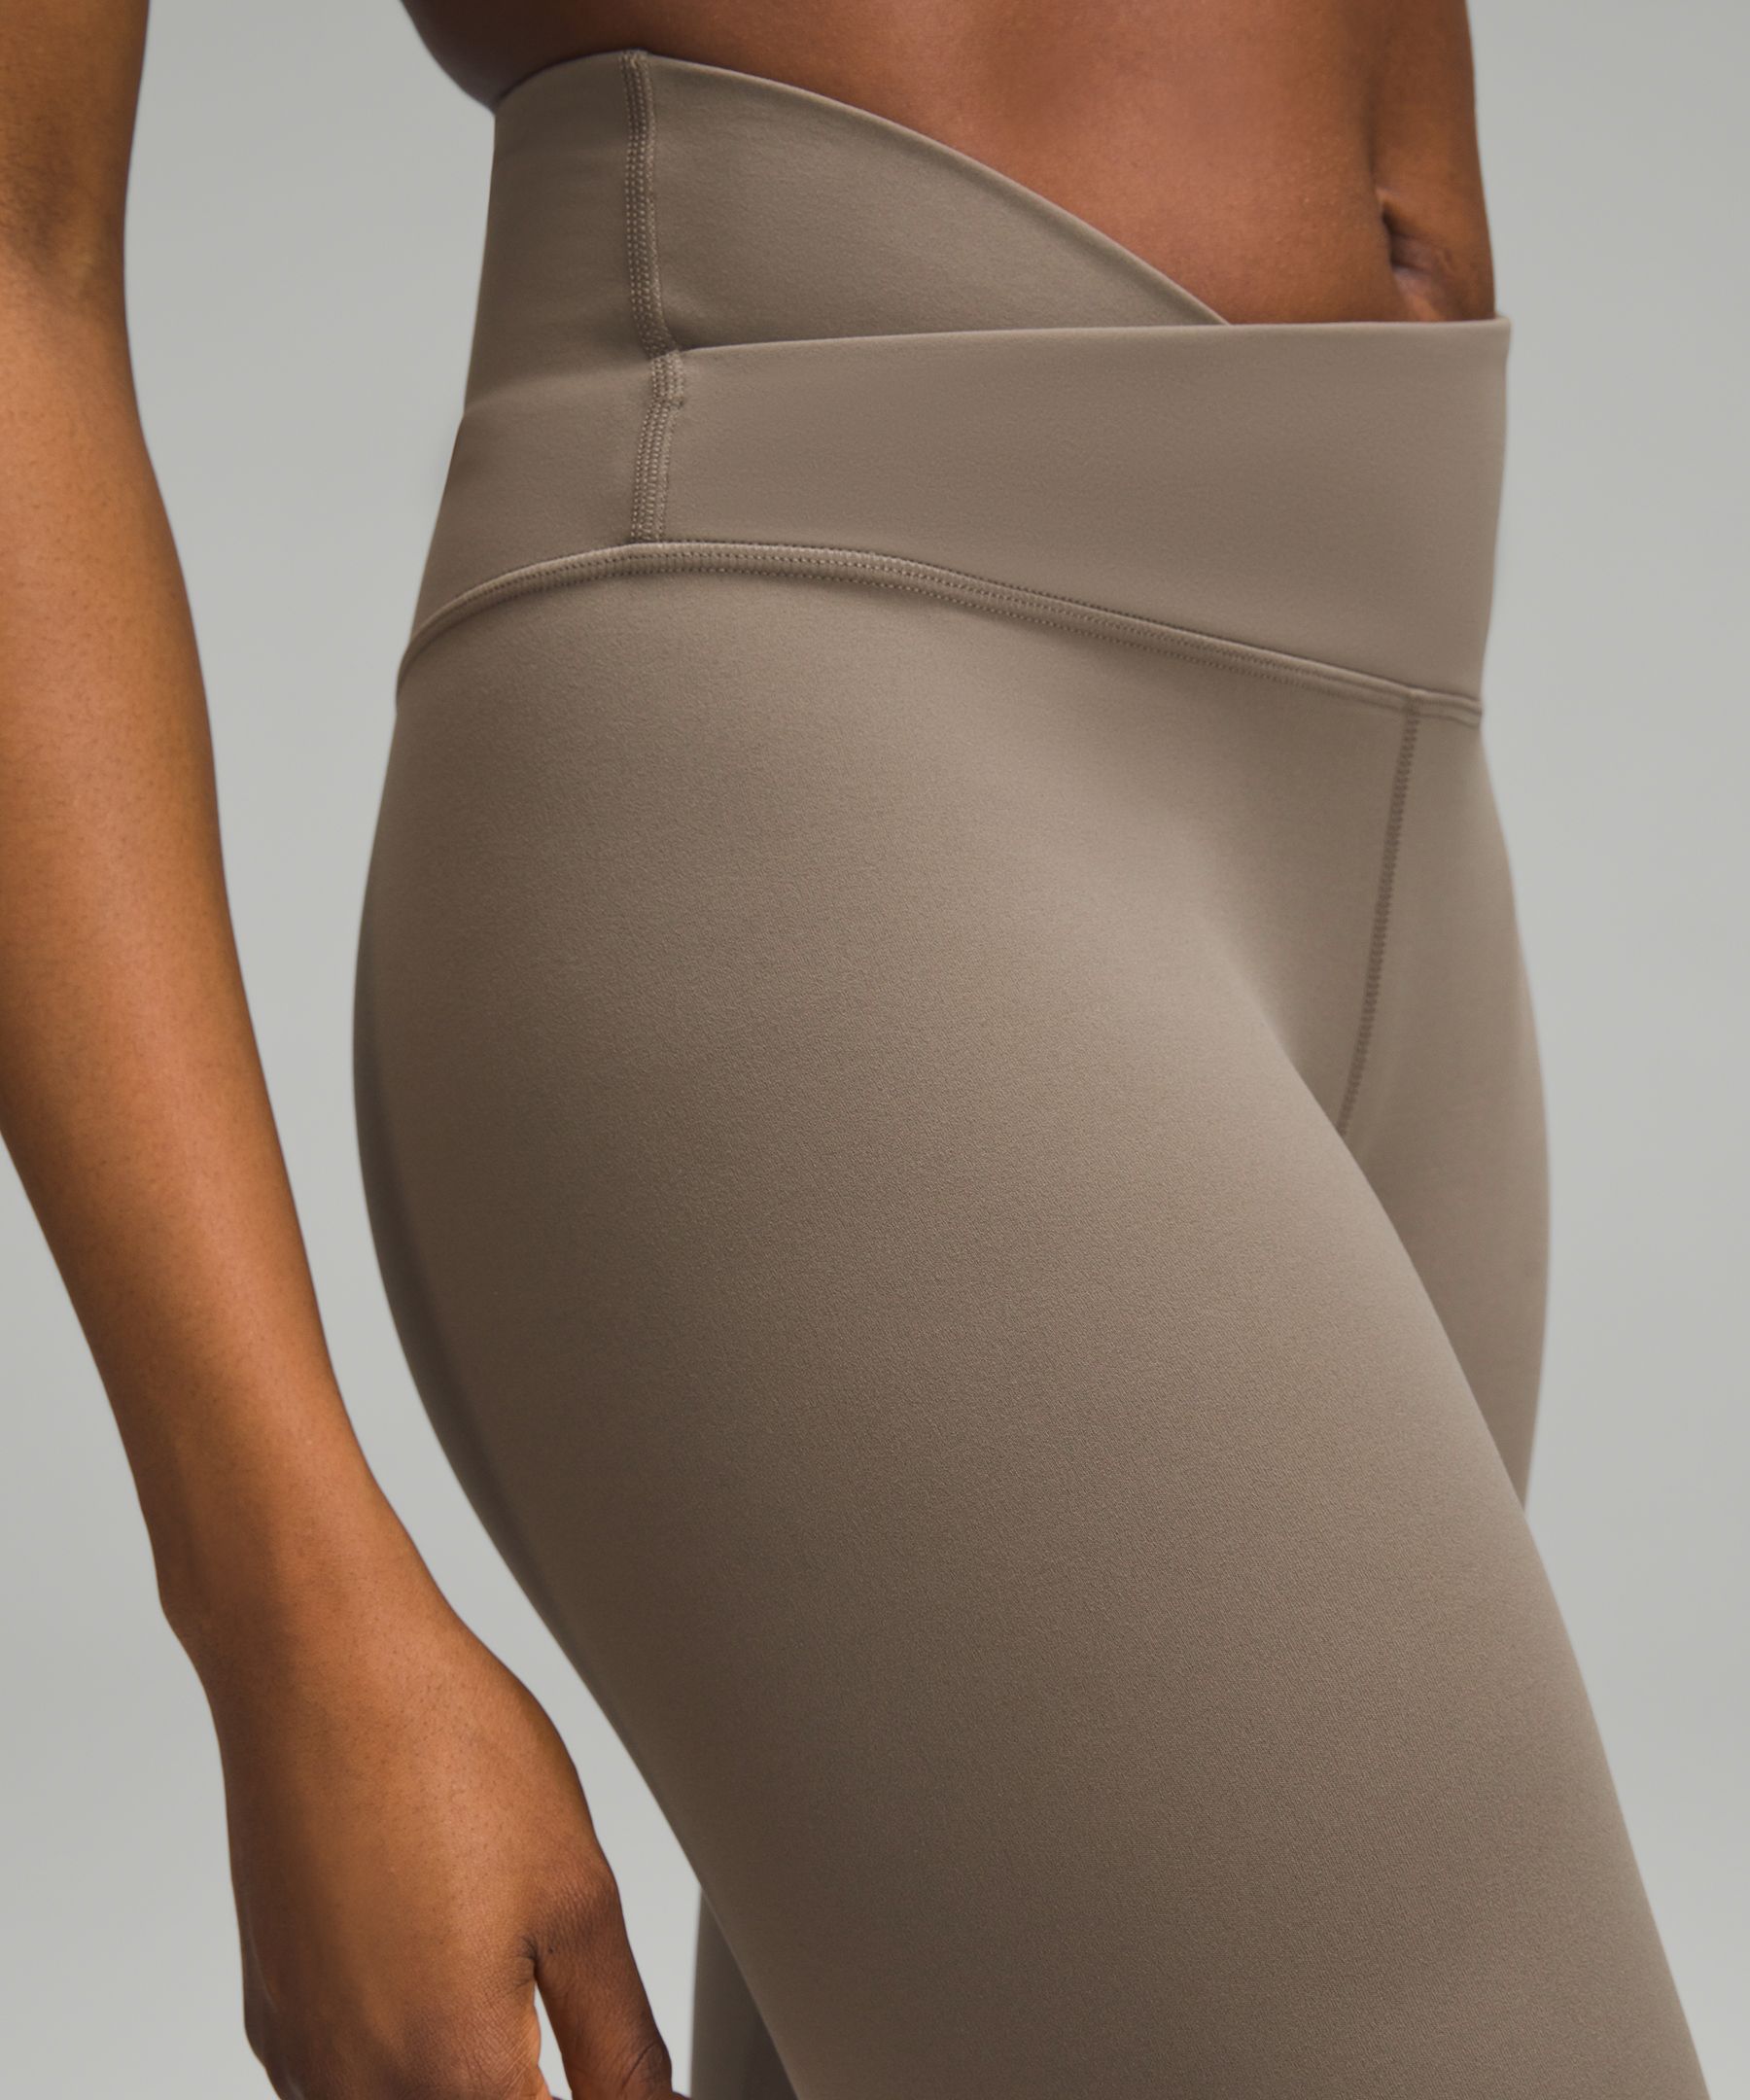 Lululemon Align™ Asymmetrical-Waist Pant 25, Women's Leggings/Tights